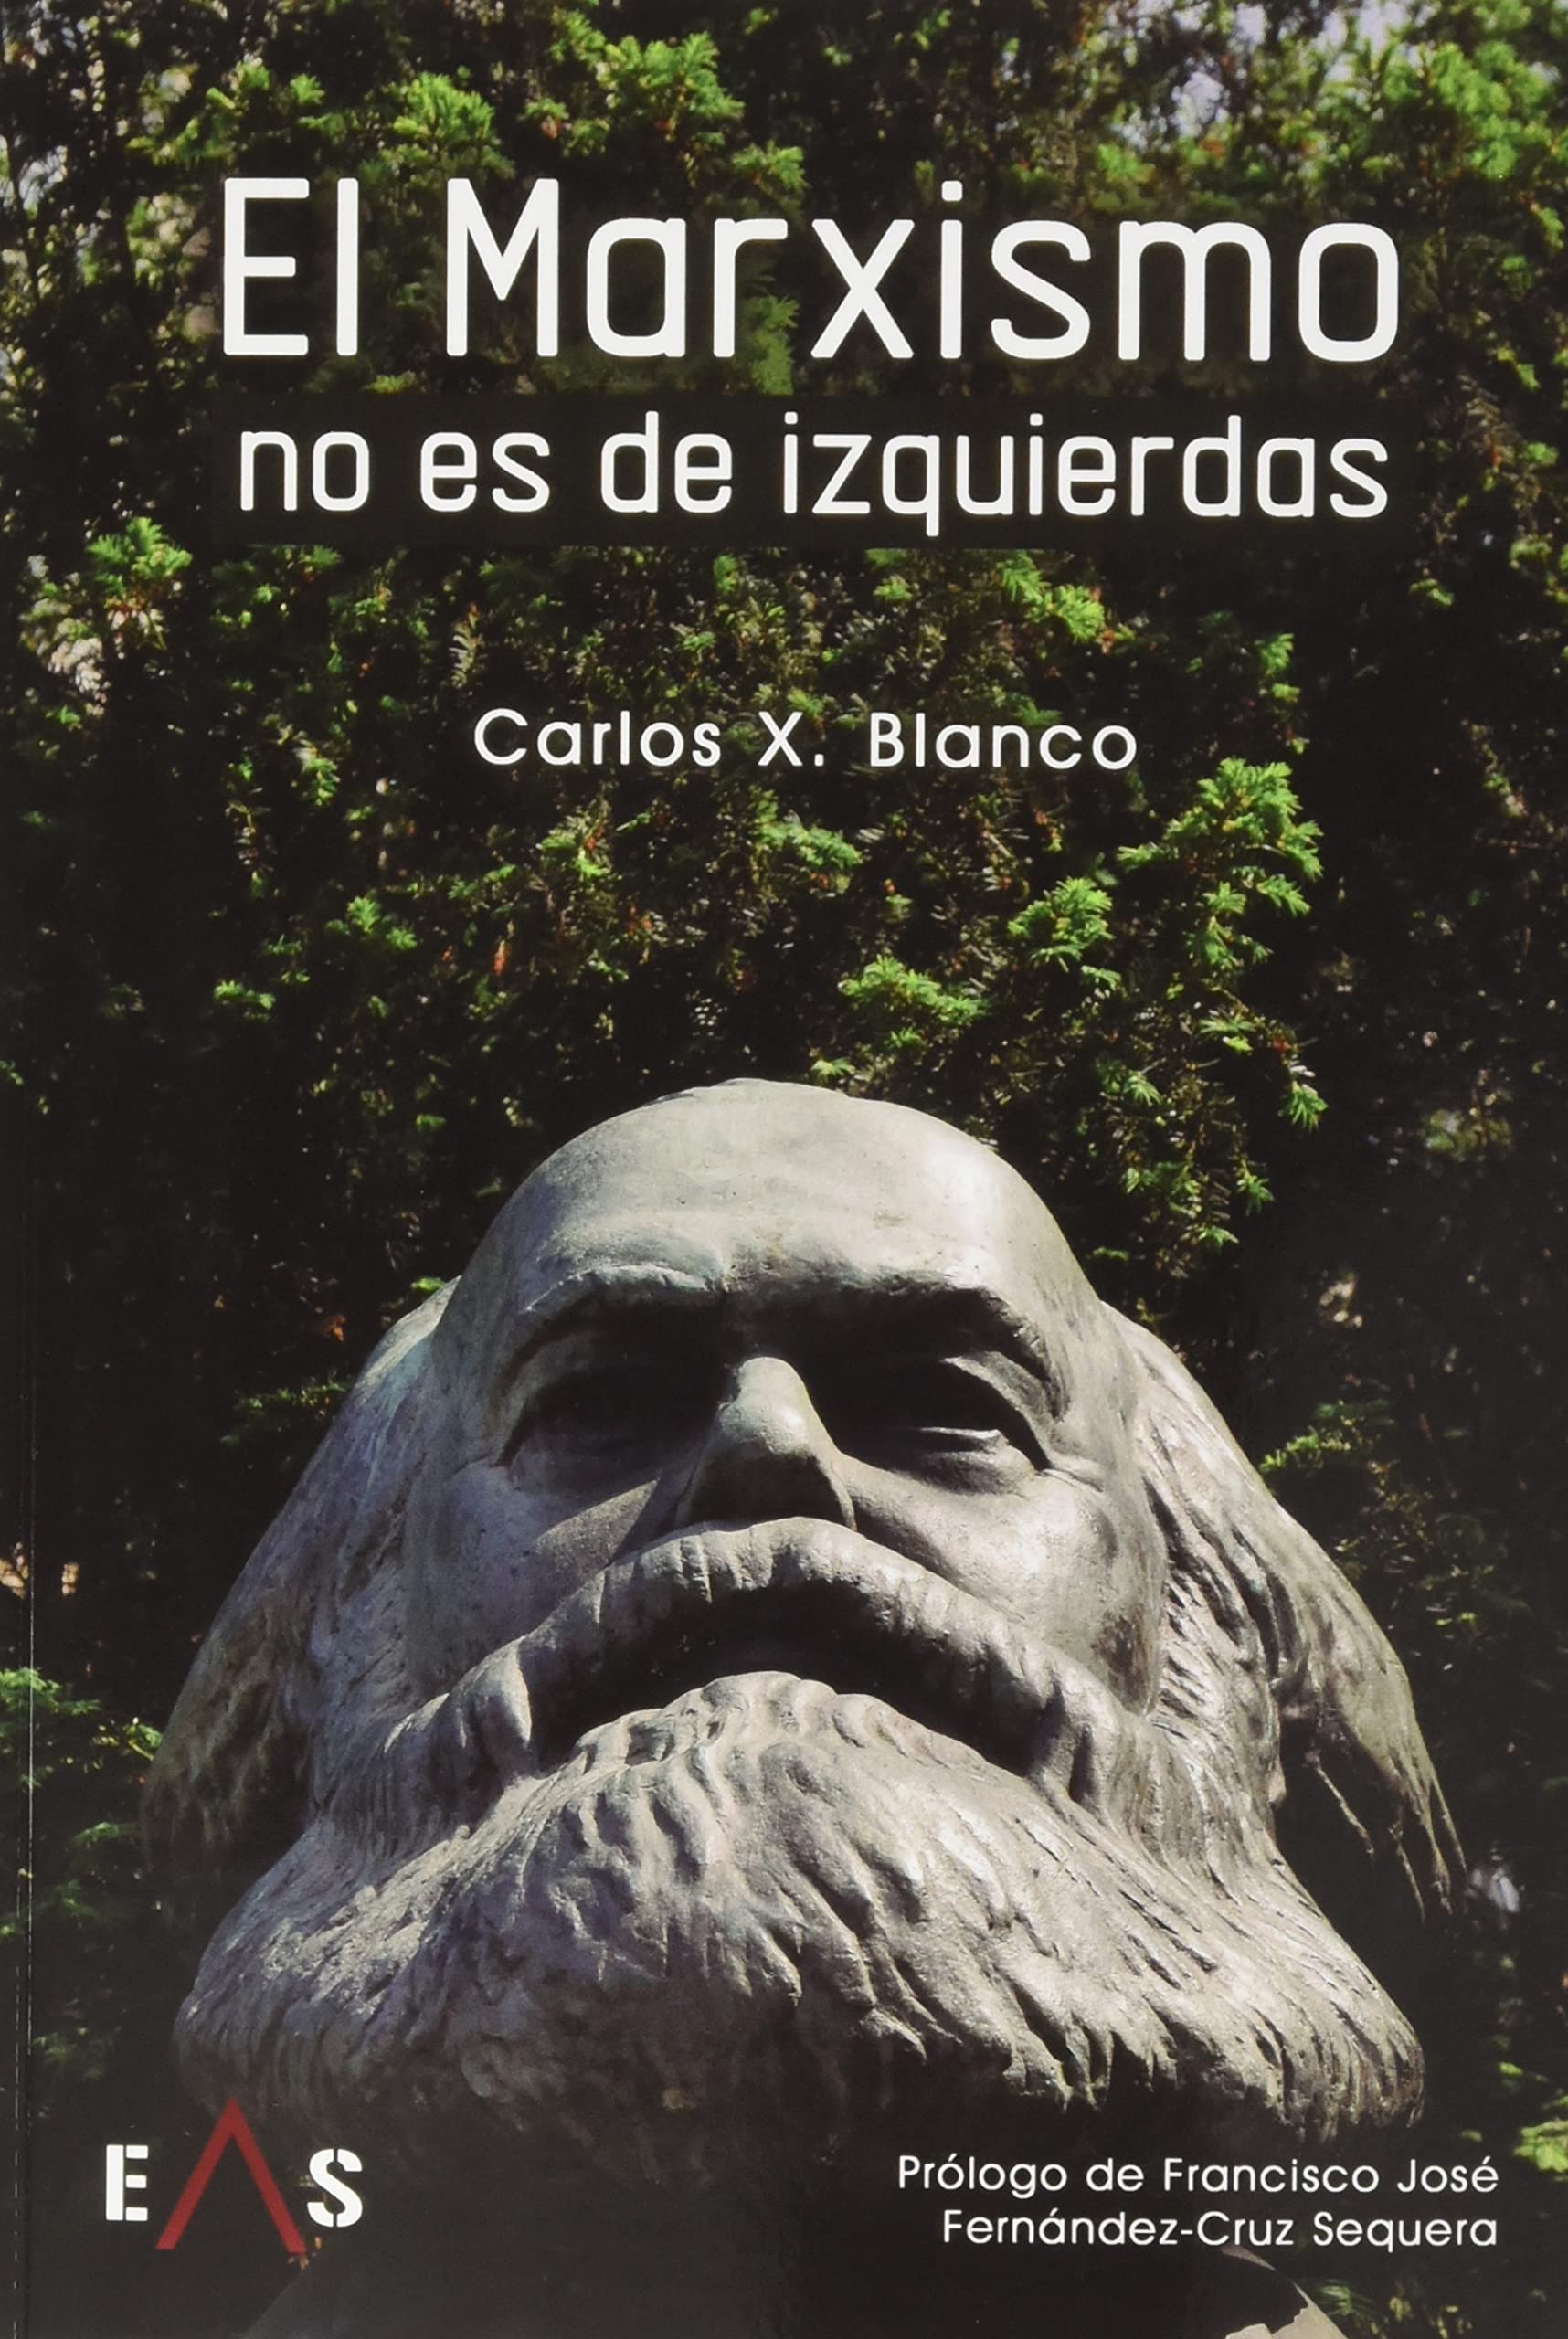 El marxismo no es de izquierdas, de Carlos X. Blanco